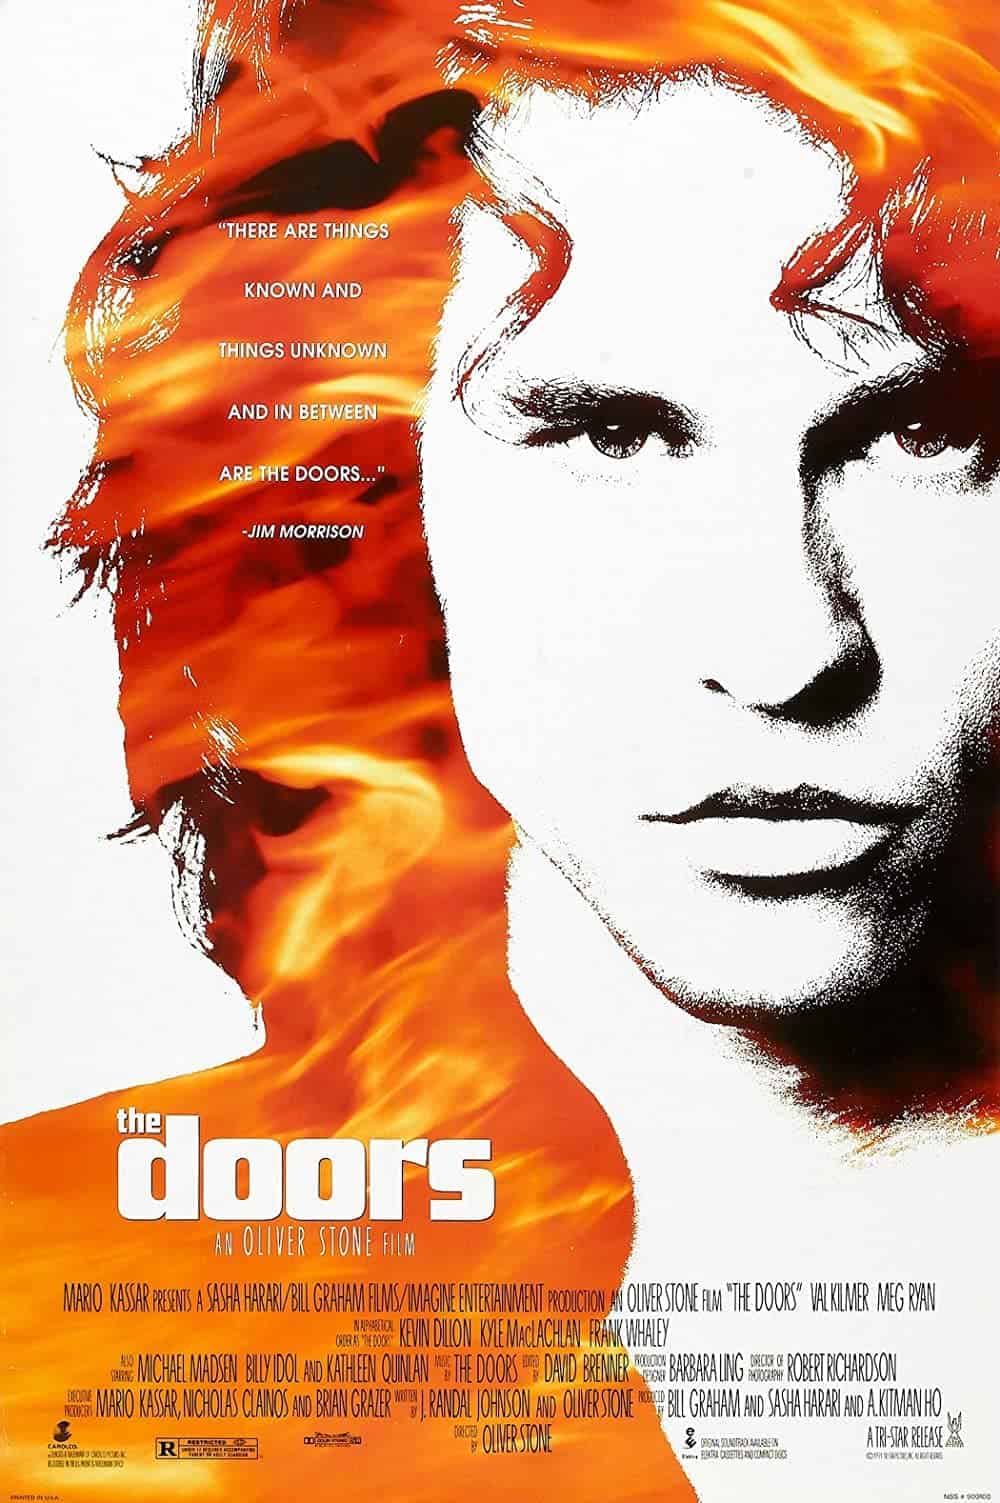 The Doors (1991) Best Rock Movies to Watch